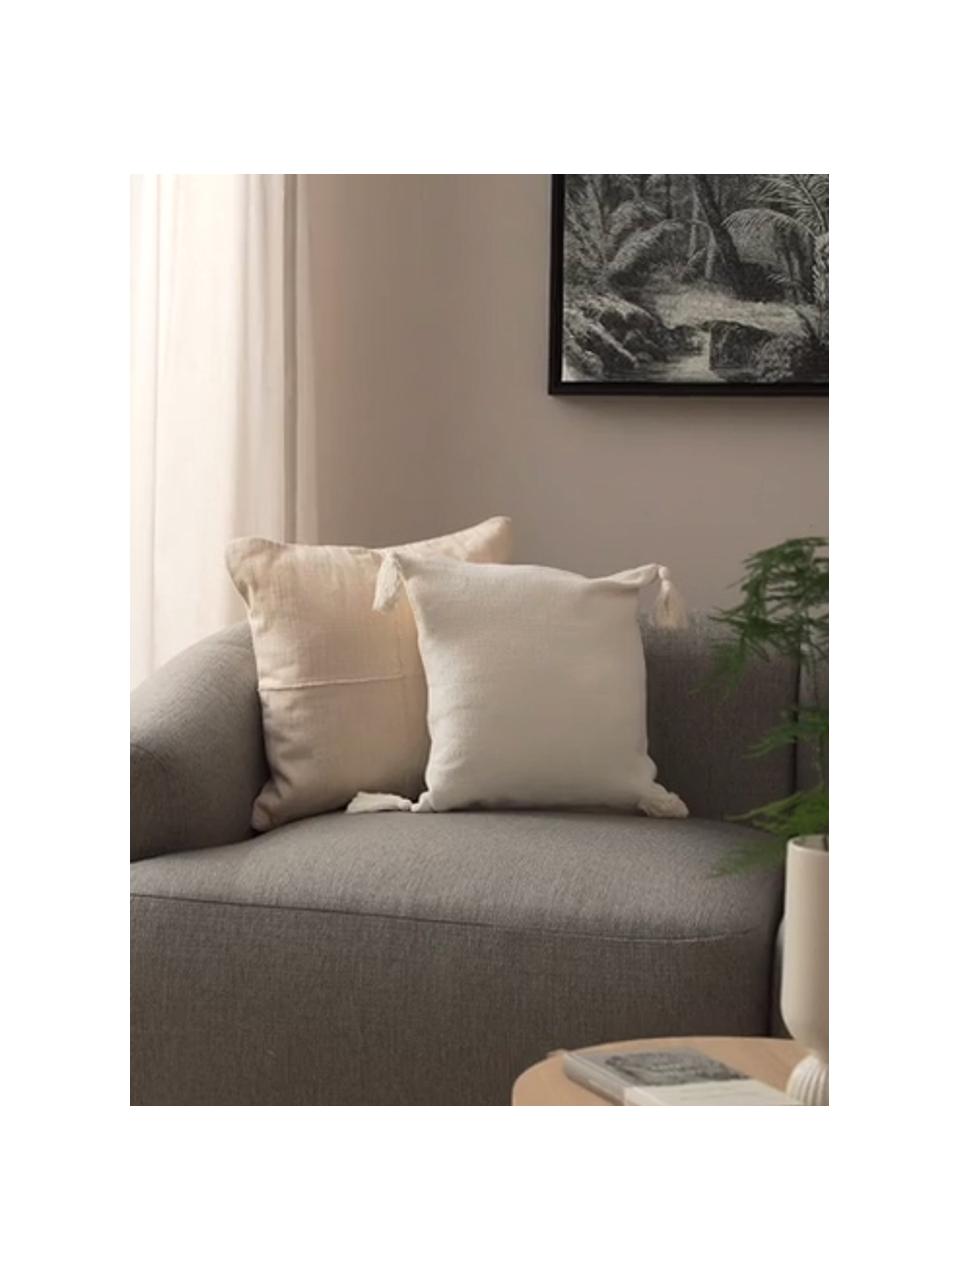 Kissenhülle Lori in Cremeweiß mit dekorativen Quasten, 100% Baumwolle, Weiß, B 40 x L 40 cm